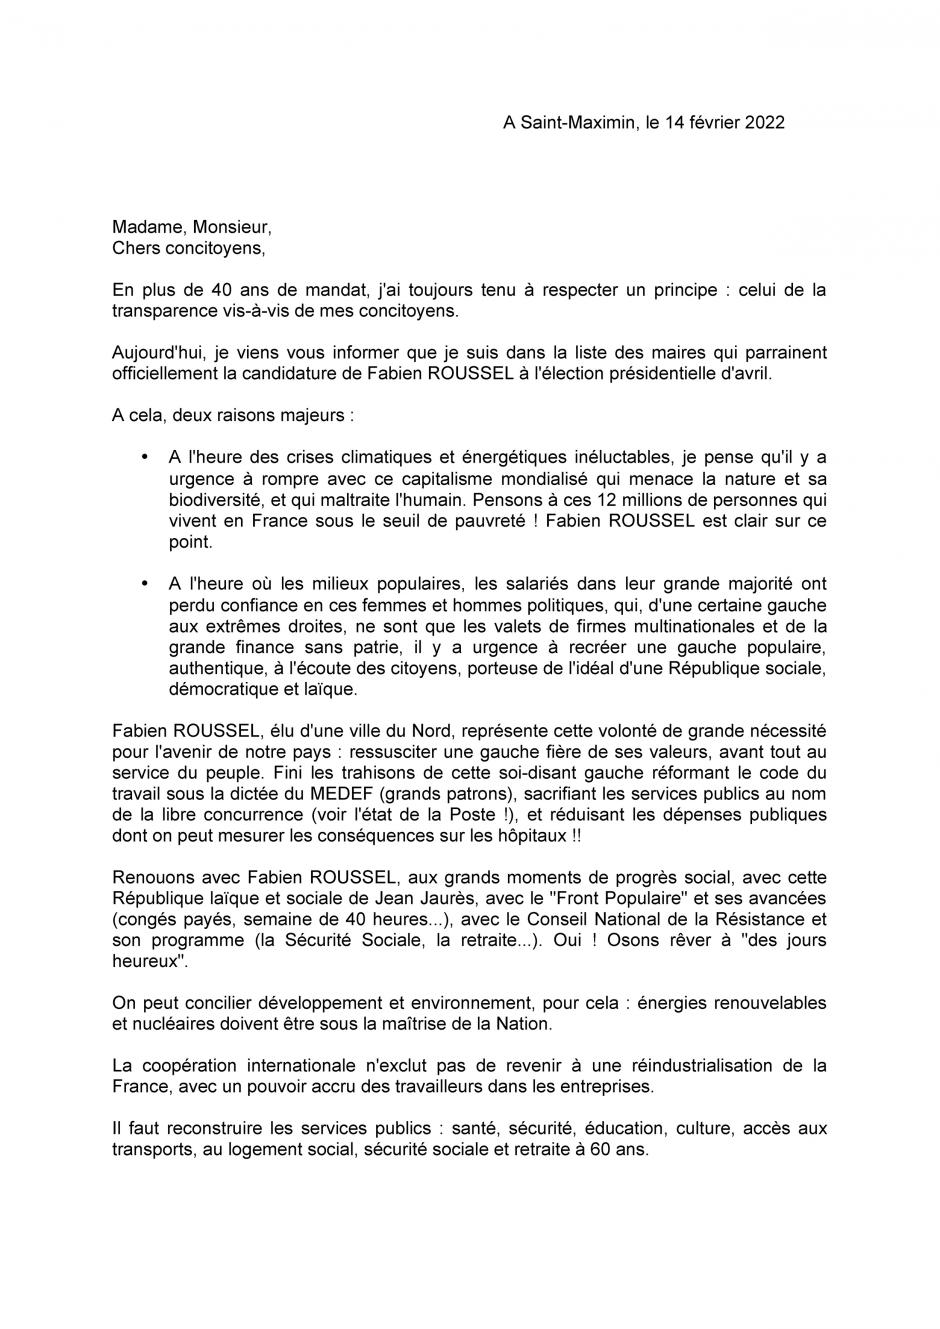 Appel de Serge Macudzinki et de 16 élu·e·s saint-maximinois·es à voter Fabien Roussel - Saint-Maximin, 14 février 2022 